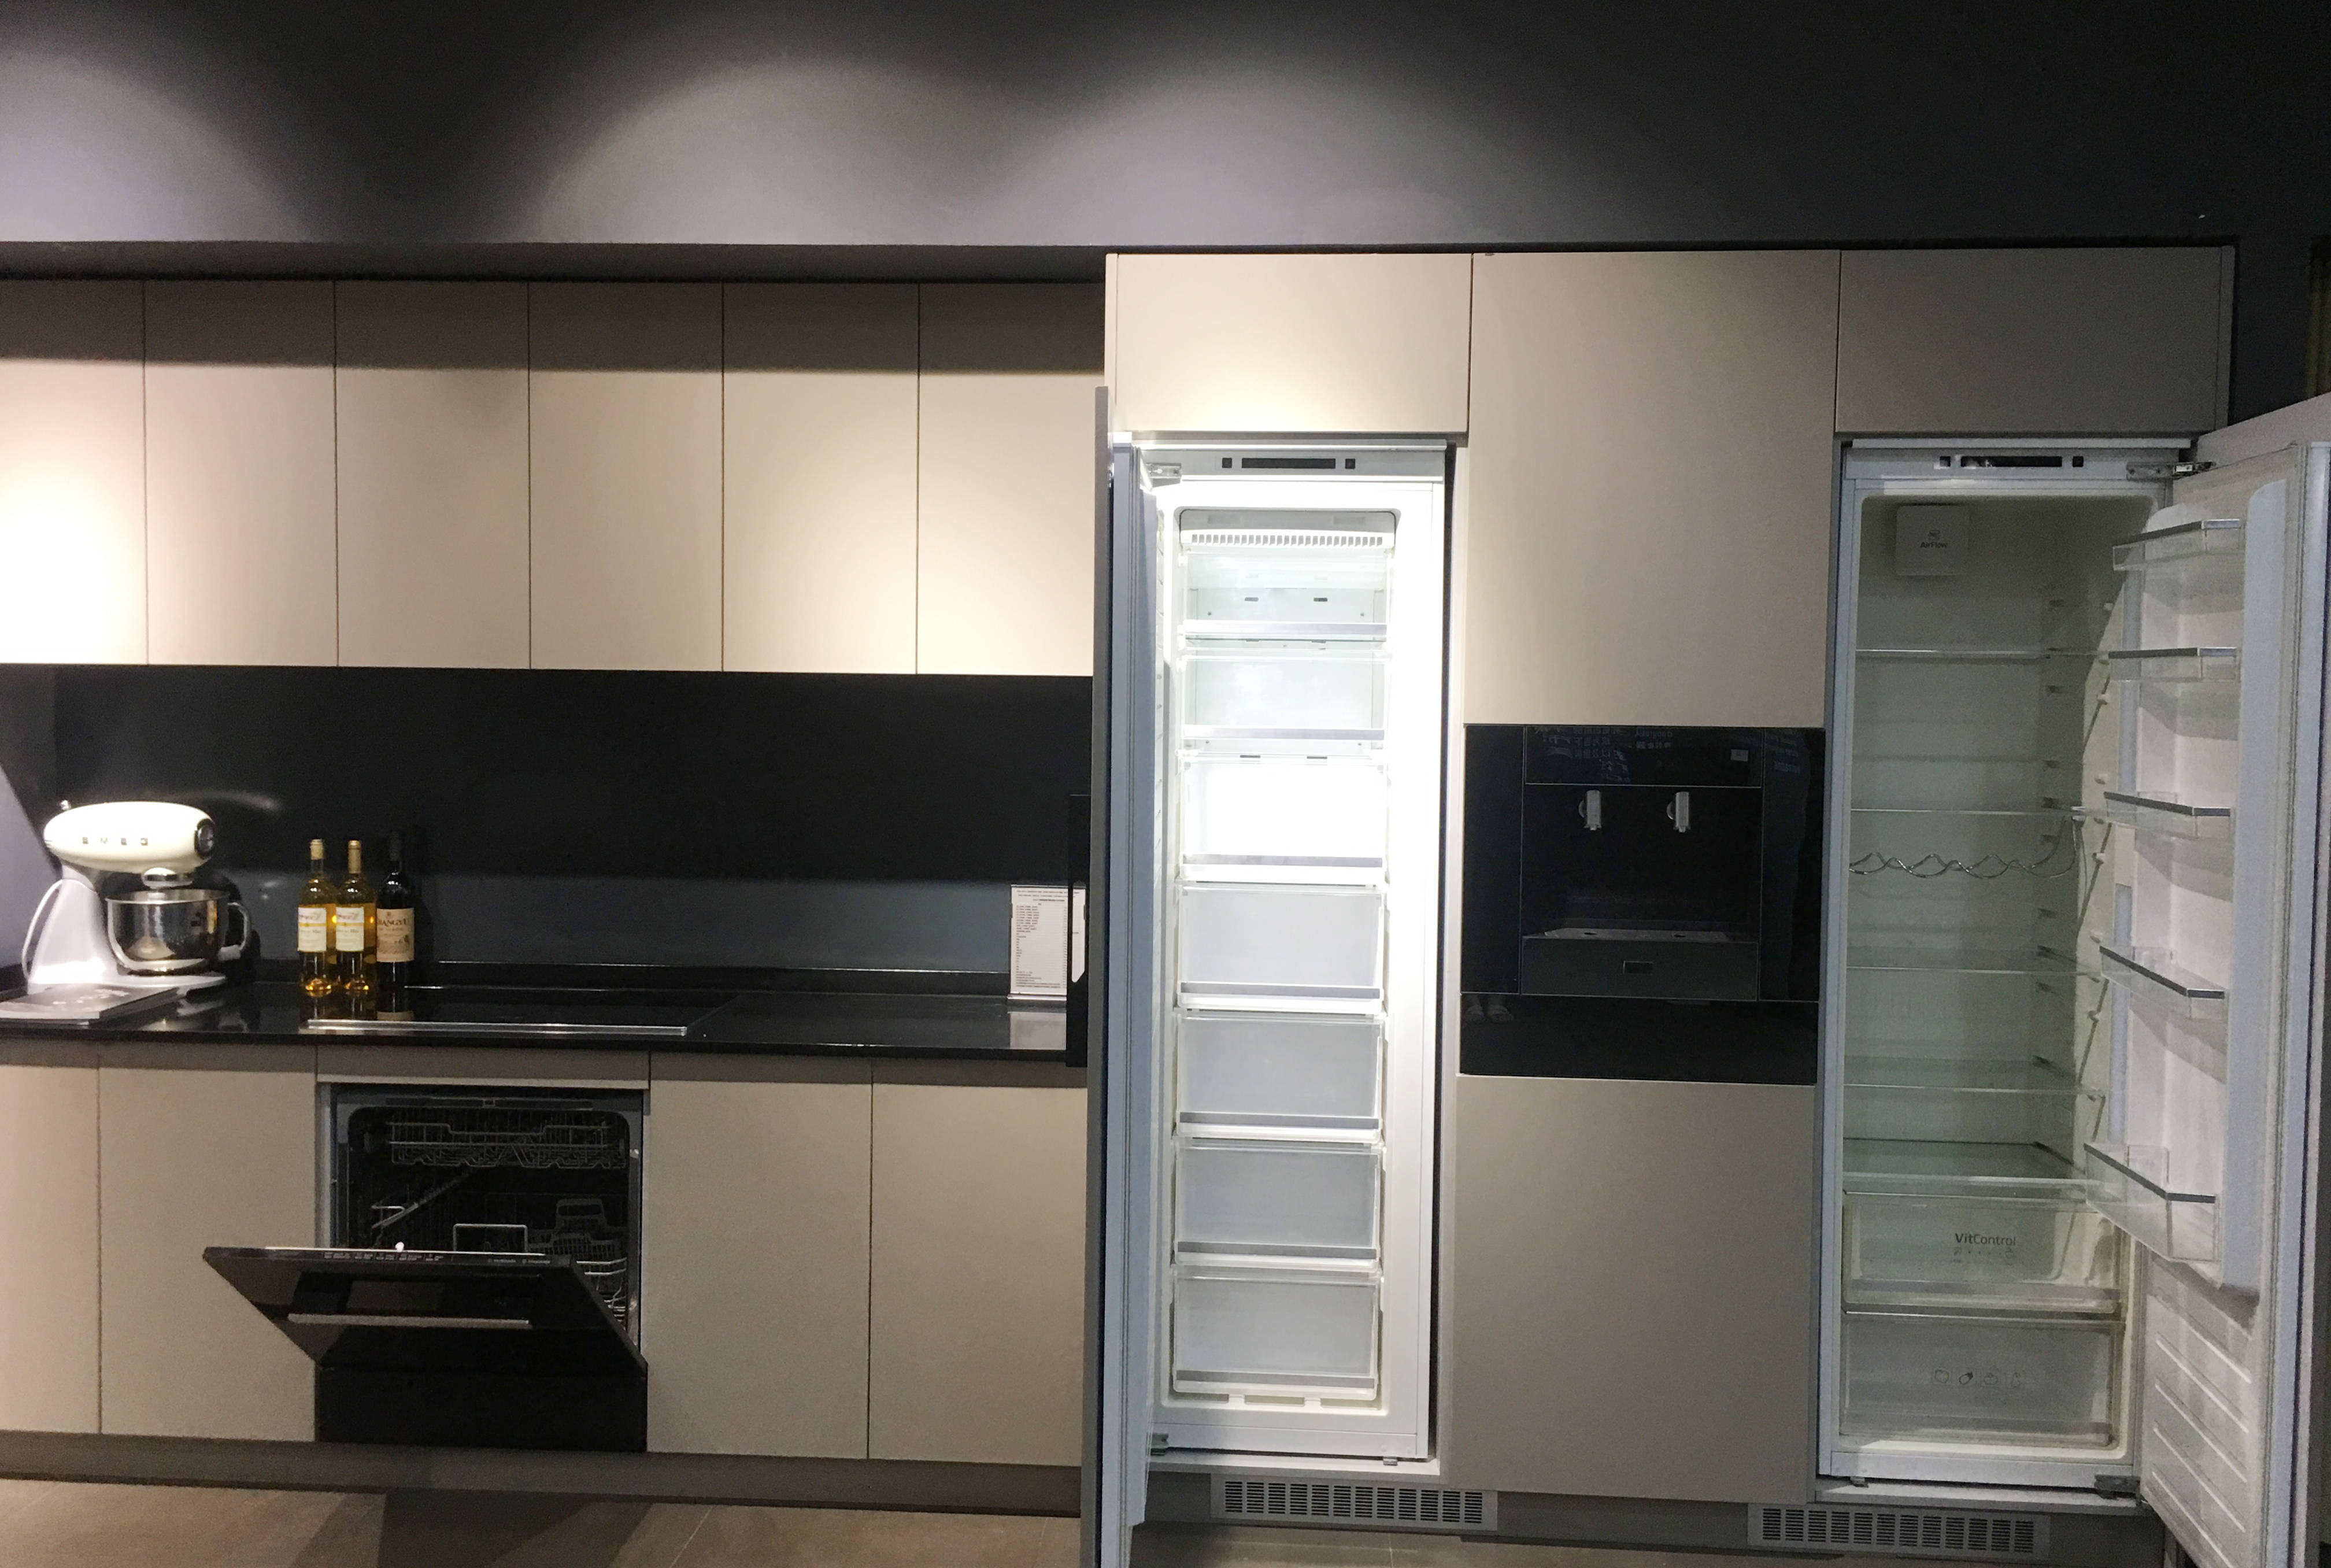 真正的嵌入式冰箱是嵌在橱柜内空间的,从外表看并不会看到冰箱的踪迹.